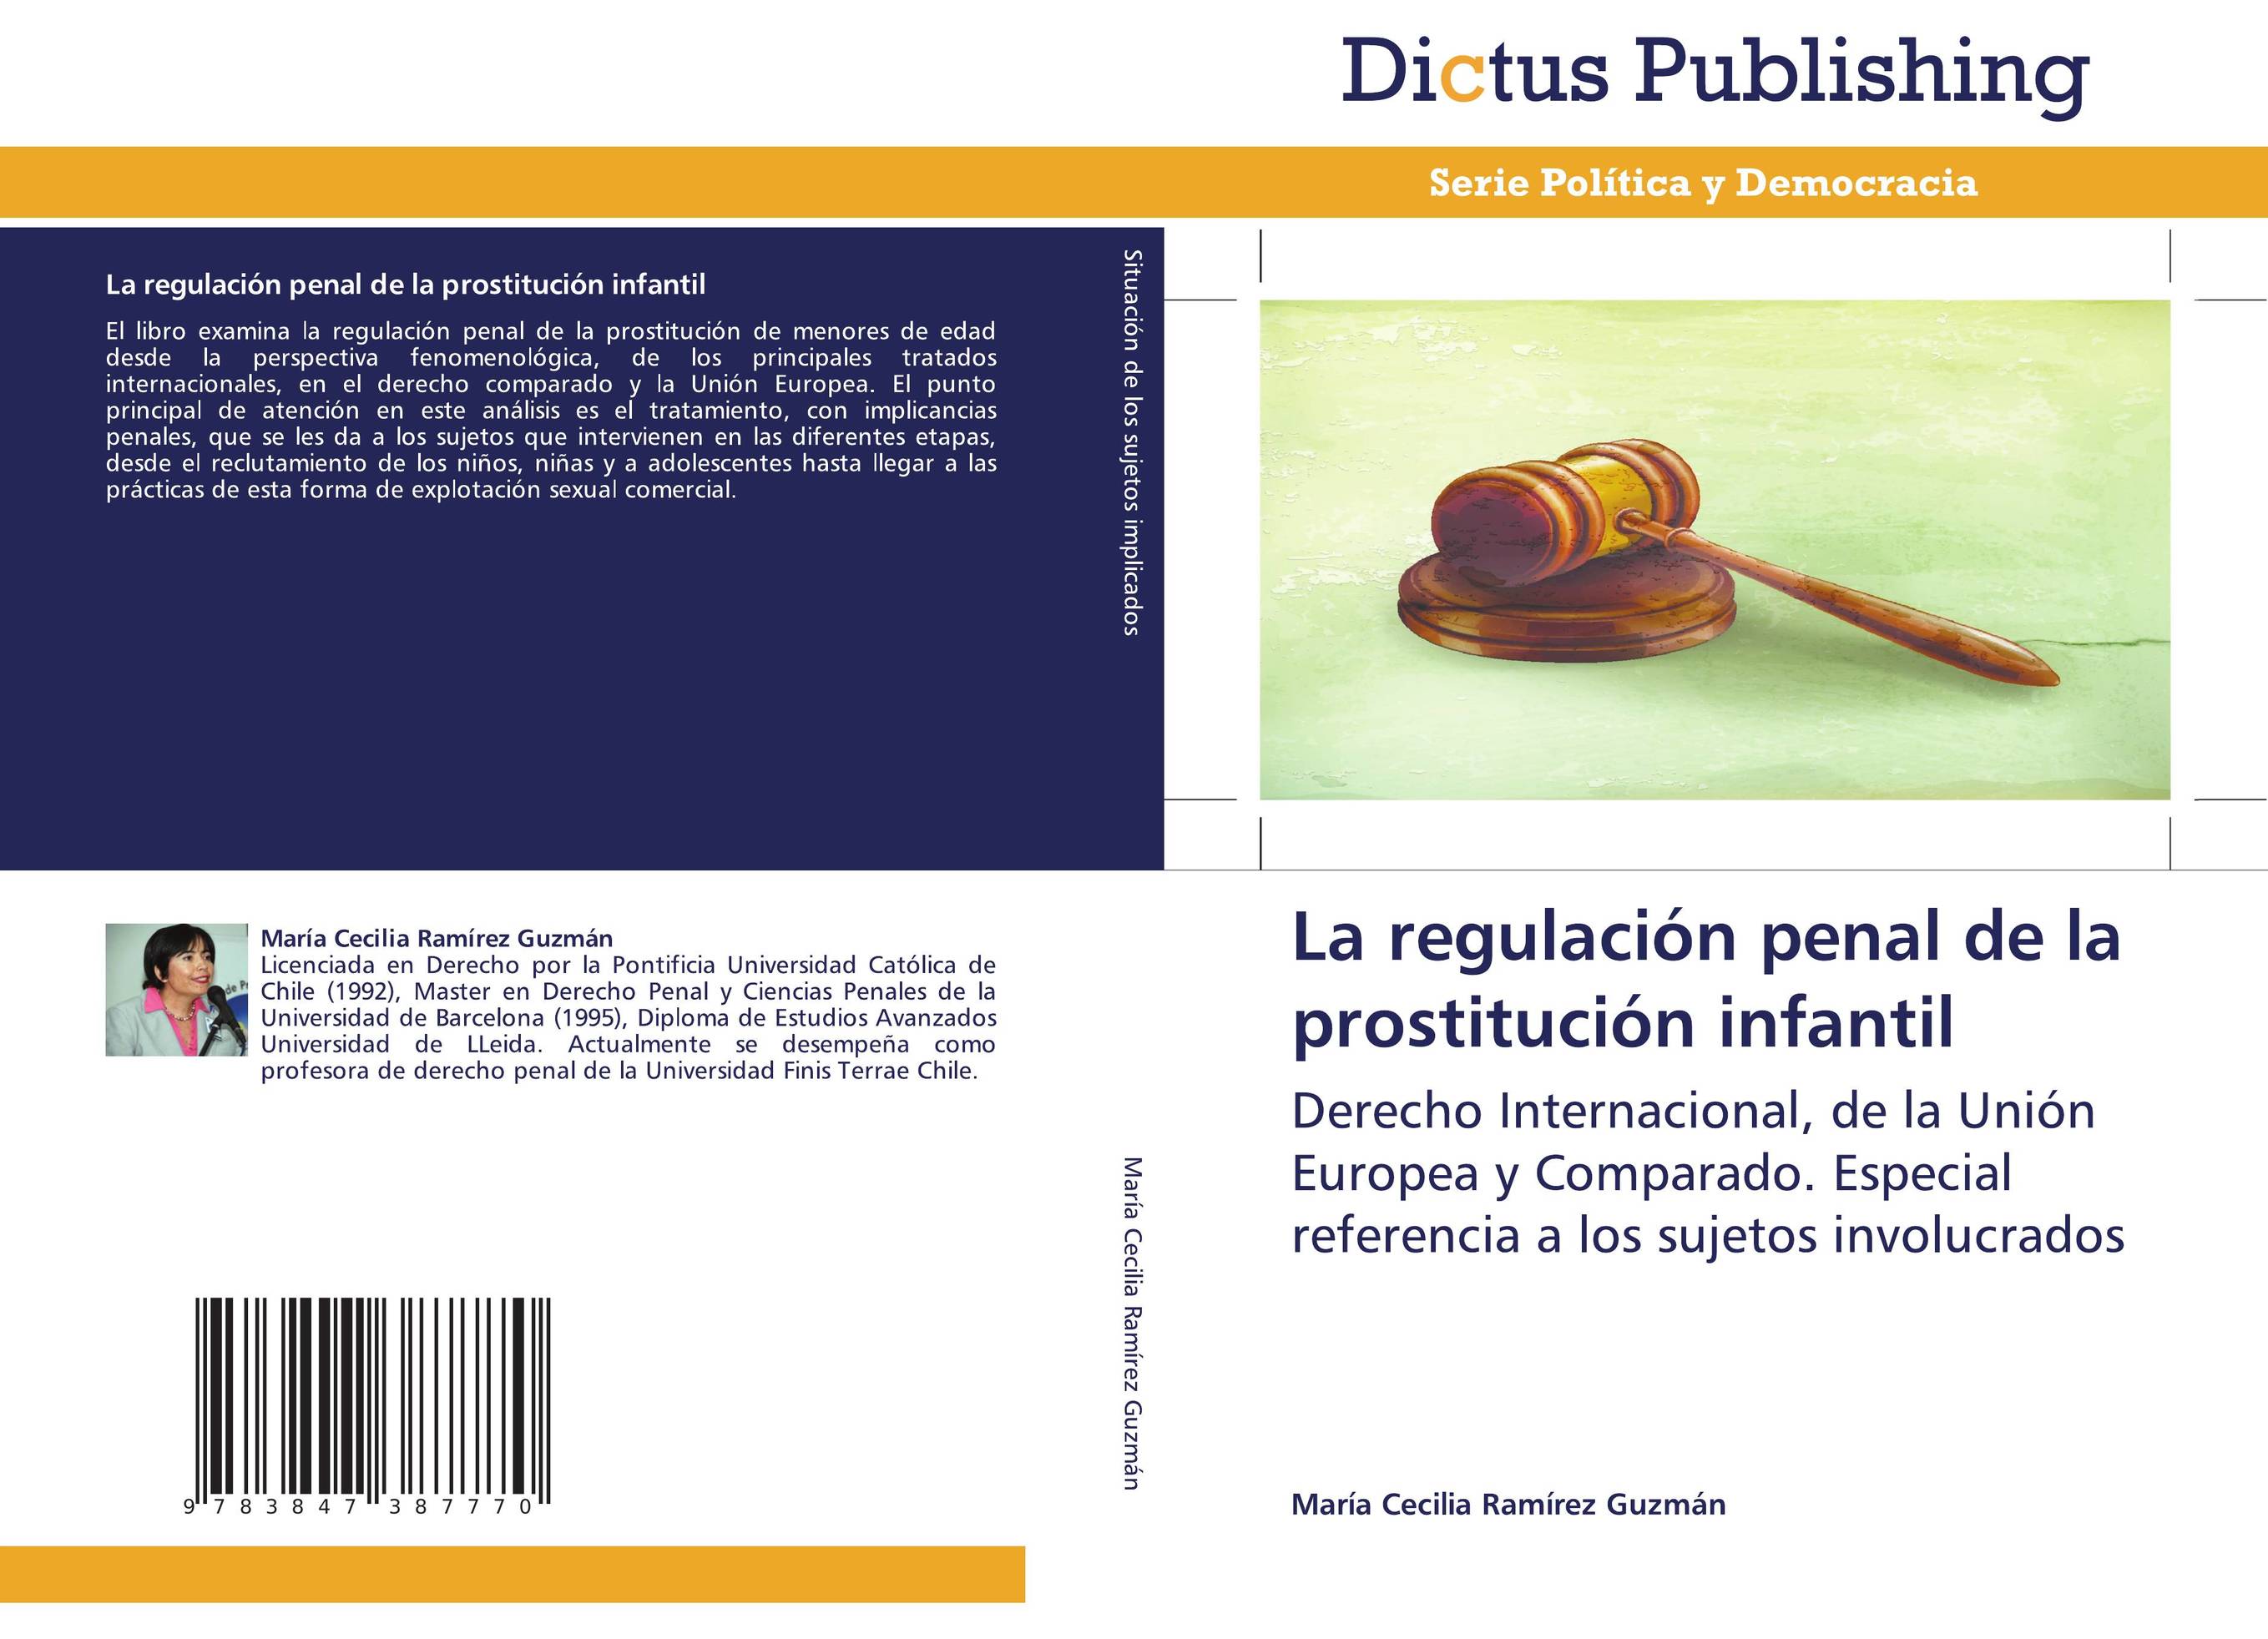 La regulación penal de la prostitución infantil